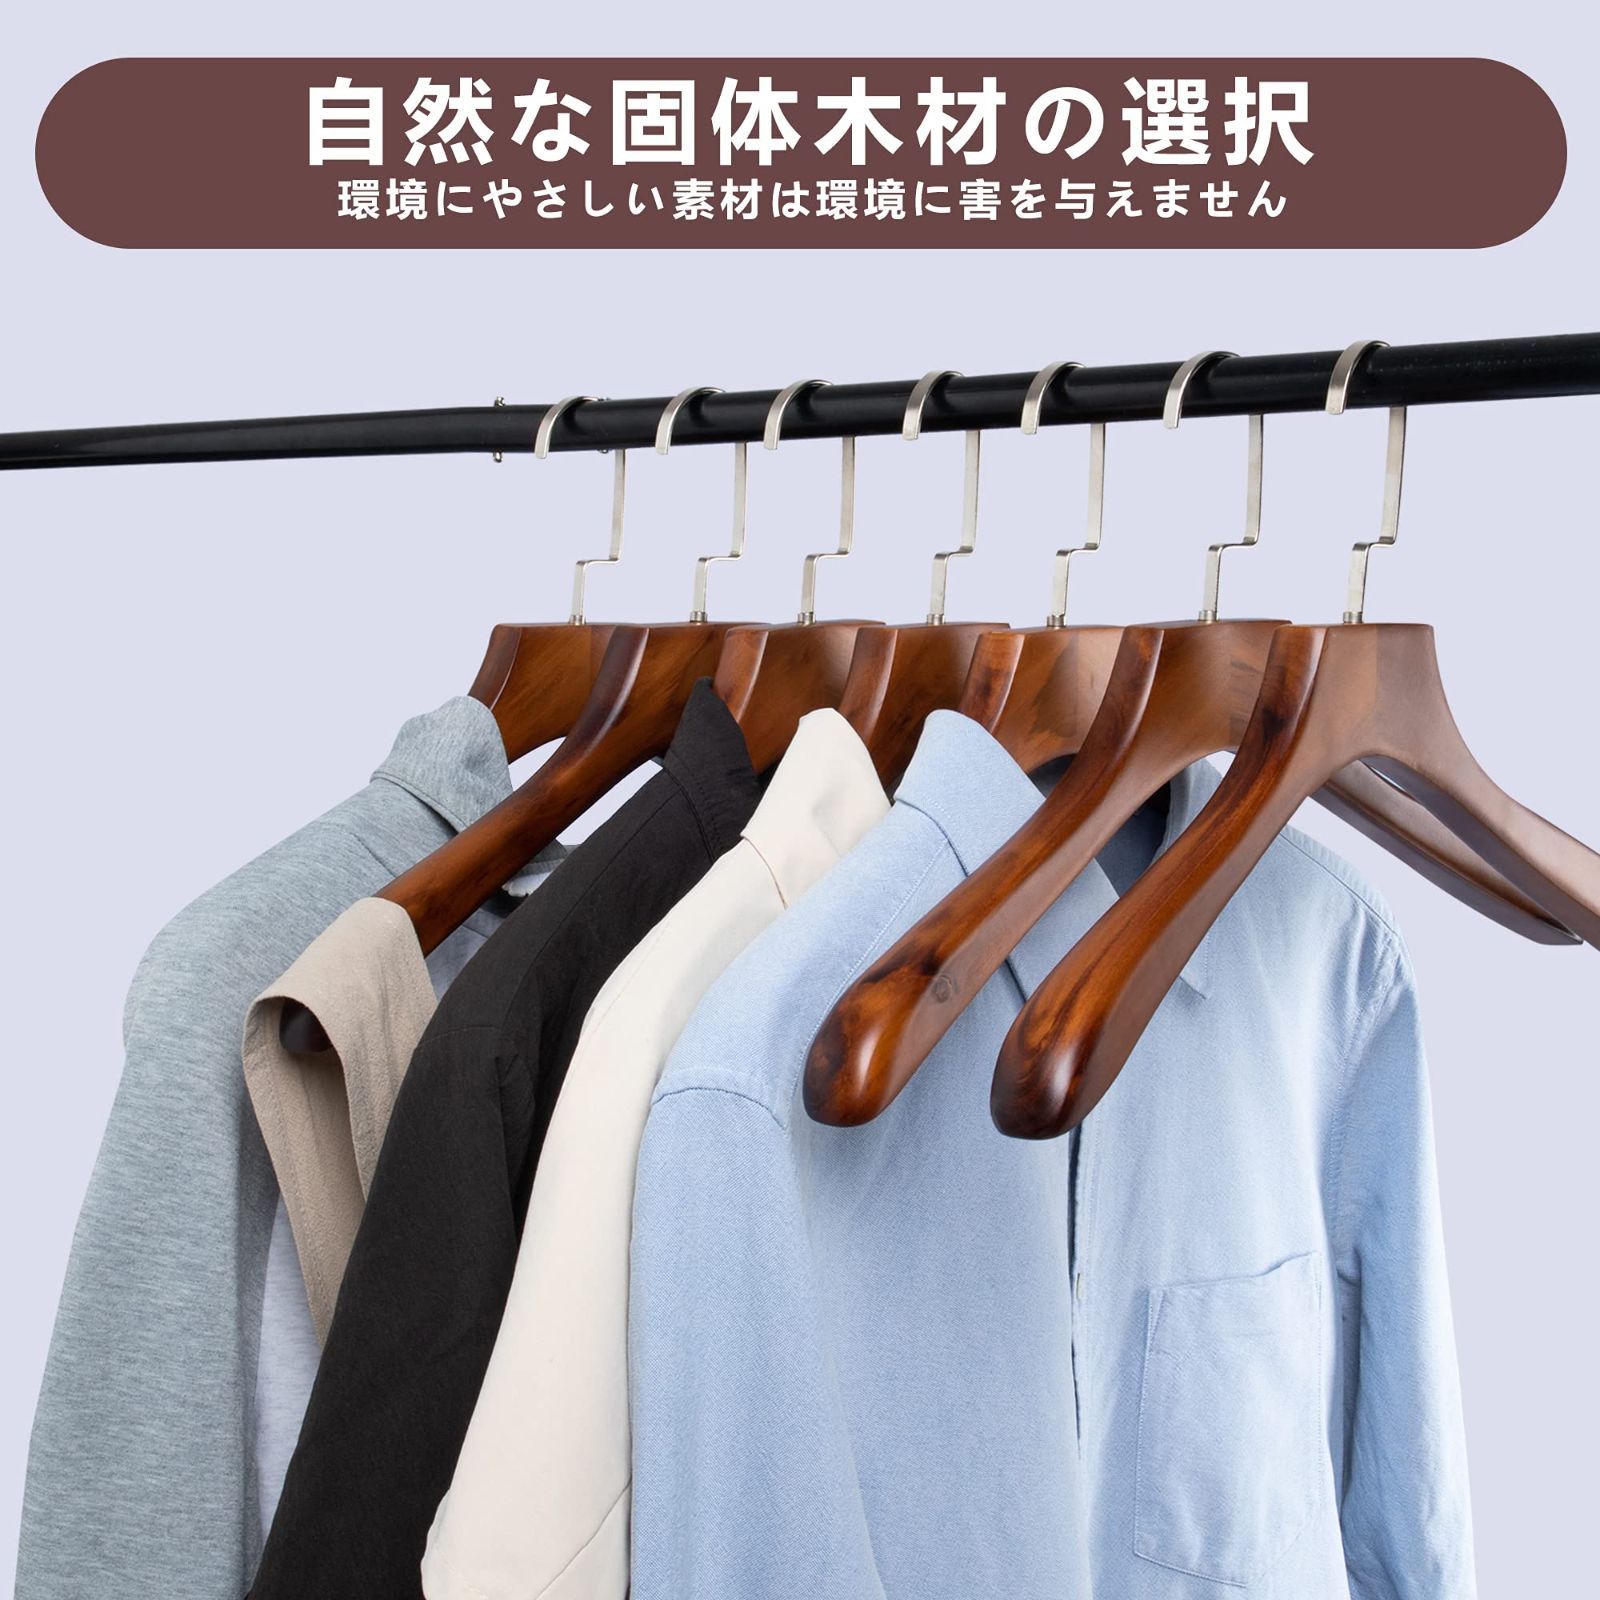 【色: ナチュラル/6本】木製ハンガーセット 洋服 スーツ コート用ハンガー 手